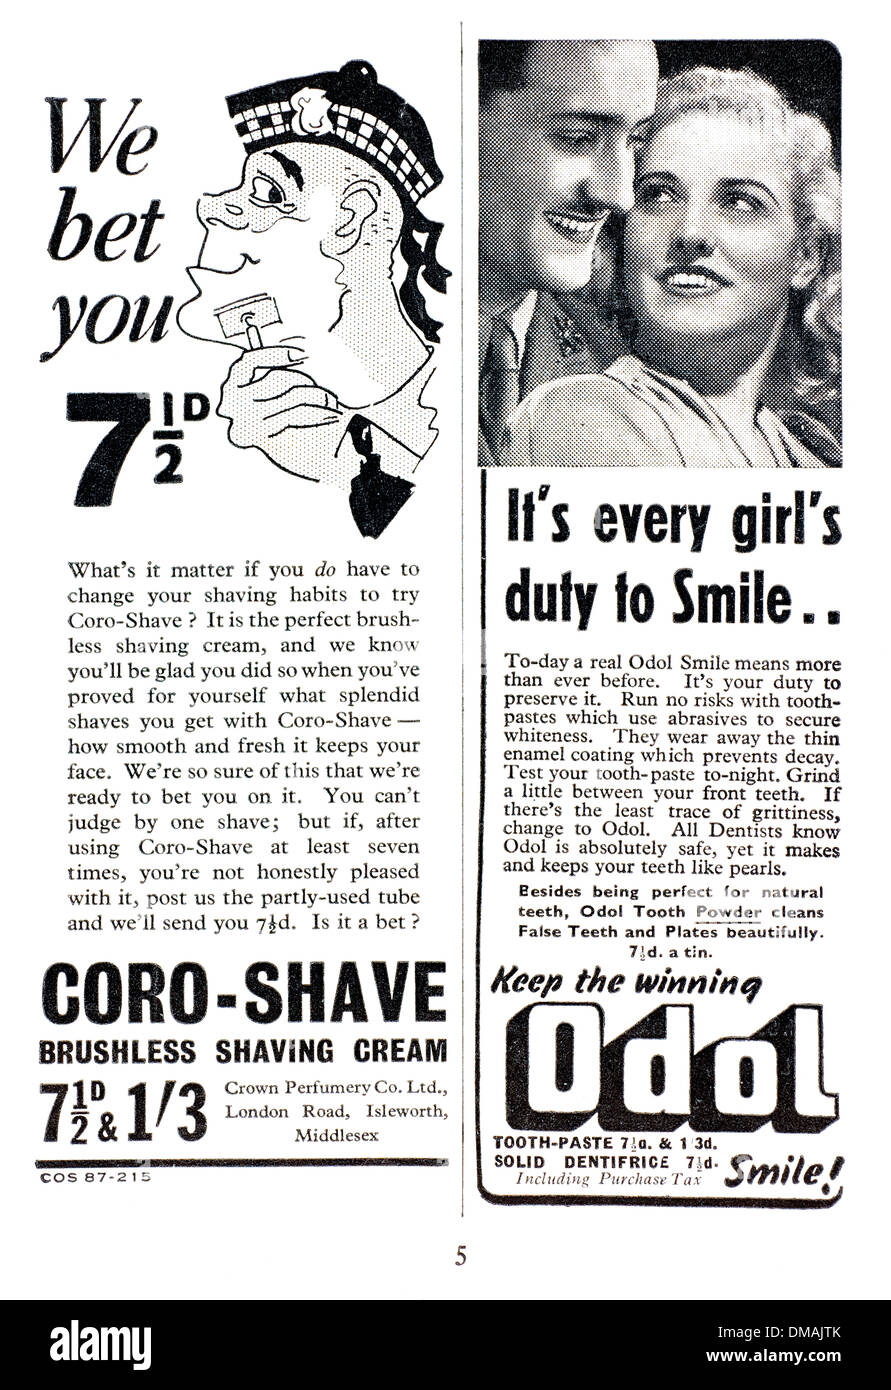 Anuncio antiguo coro Shave Cream sonrisa Odol documento archivado histórico Foto de stock